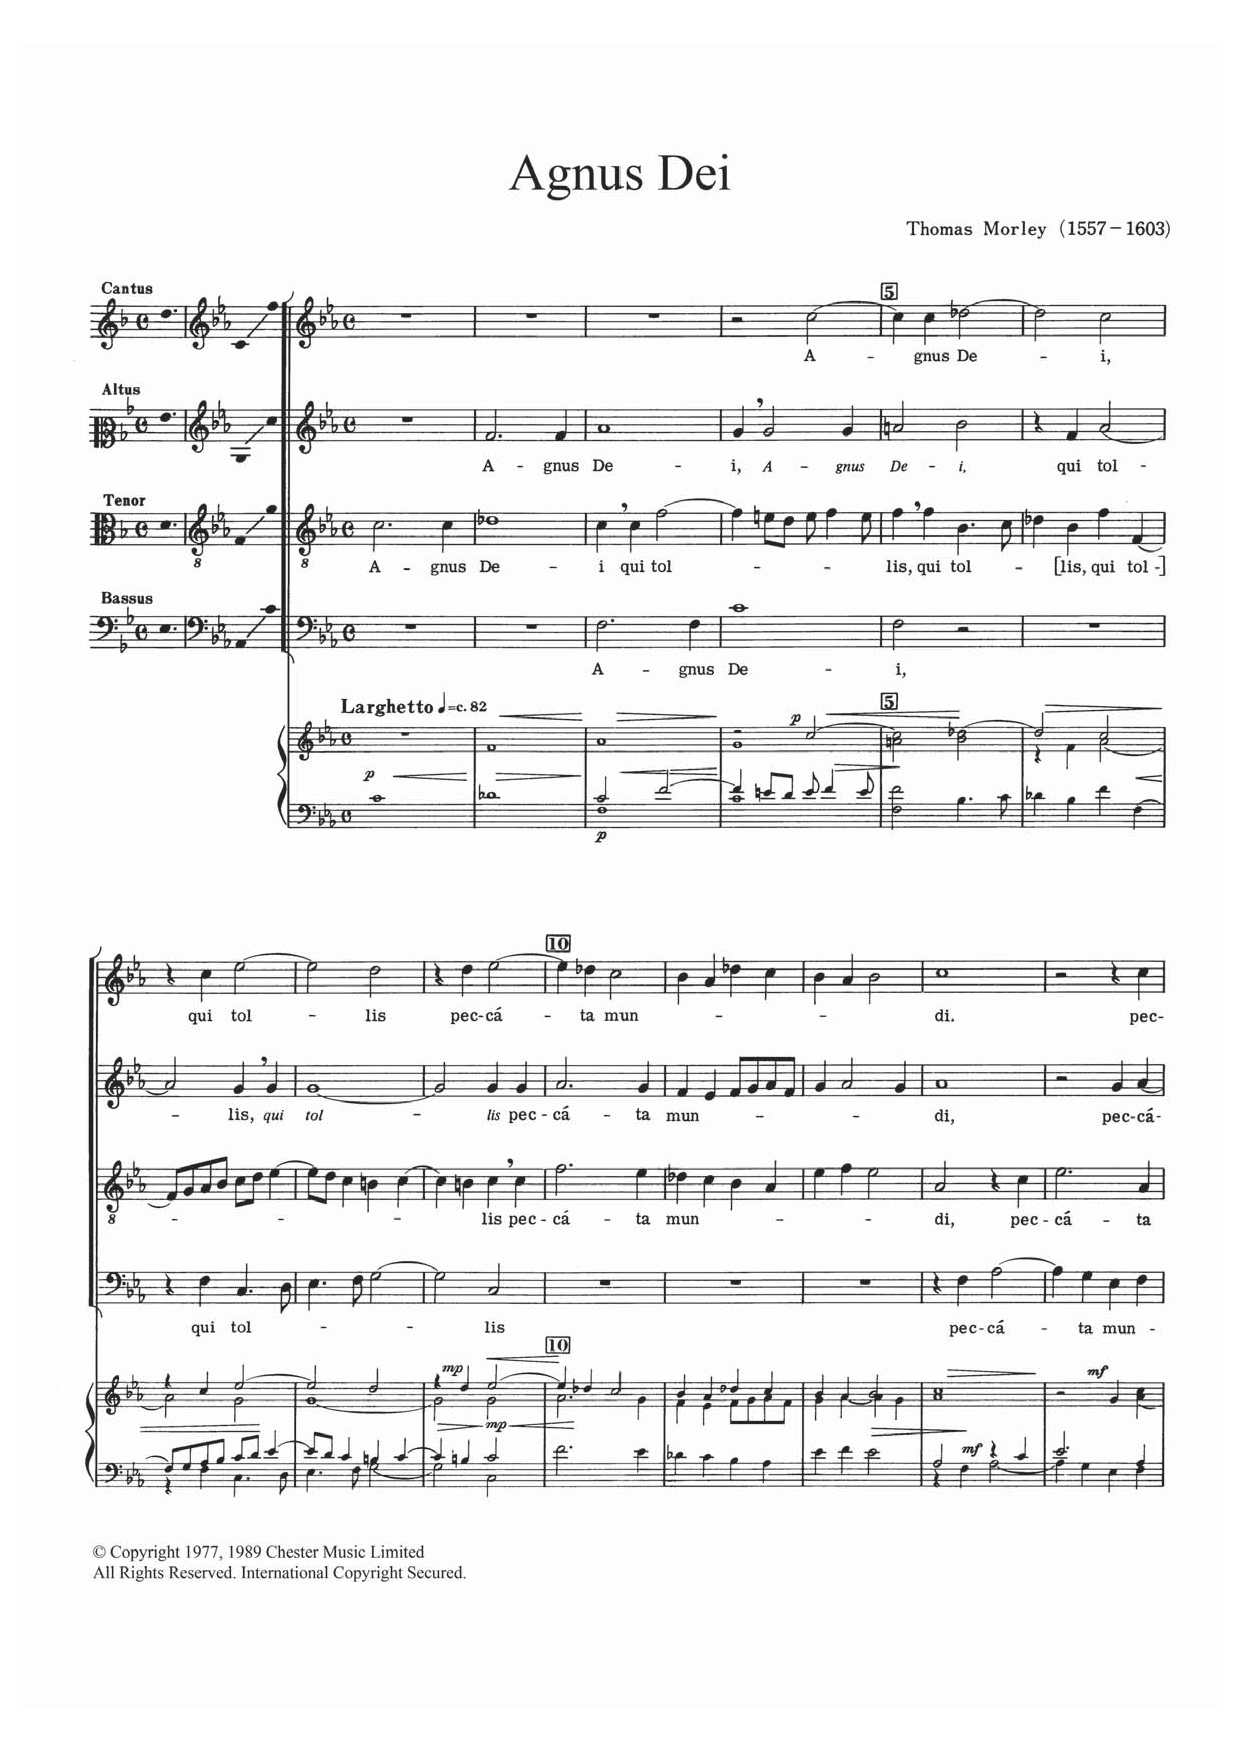 Thomas Morley Agnus Dei sheet music notes and chords arranged for SATB Choir